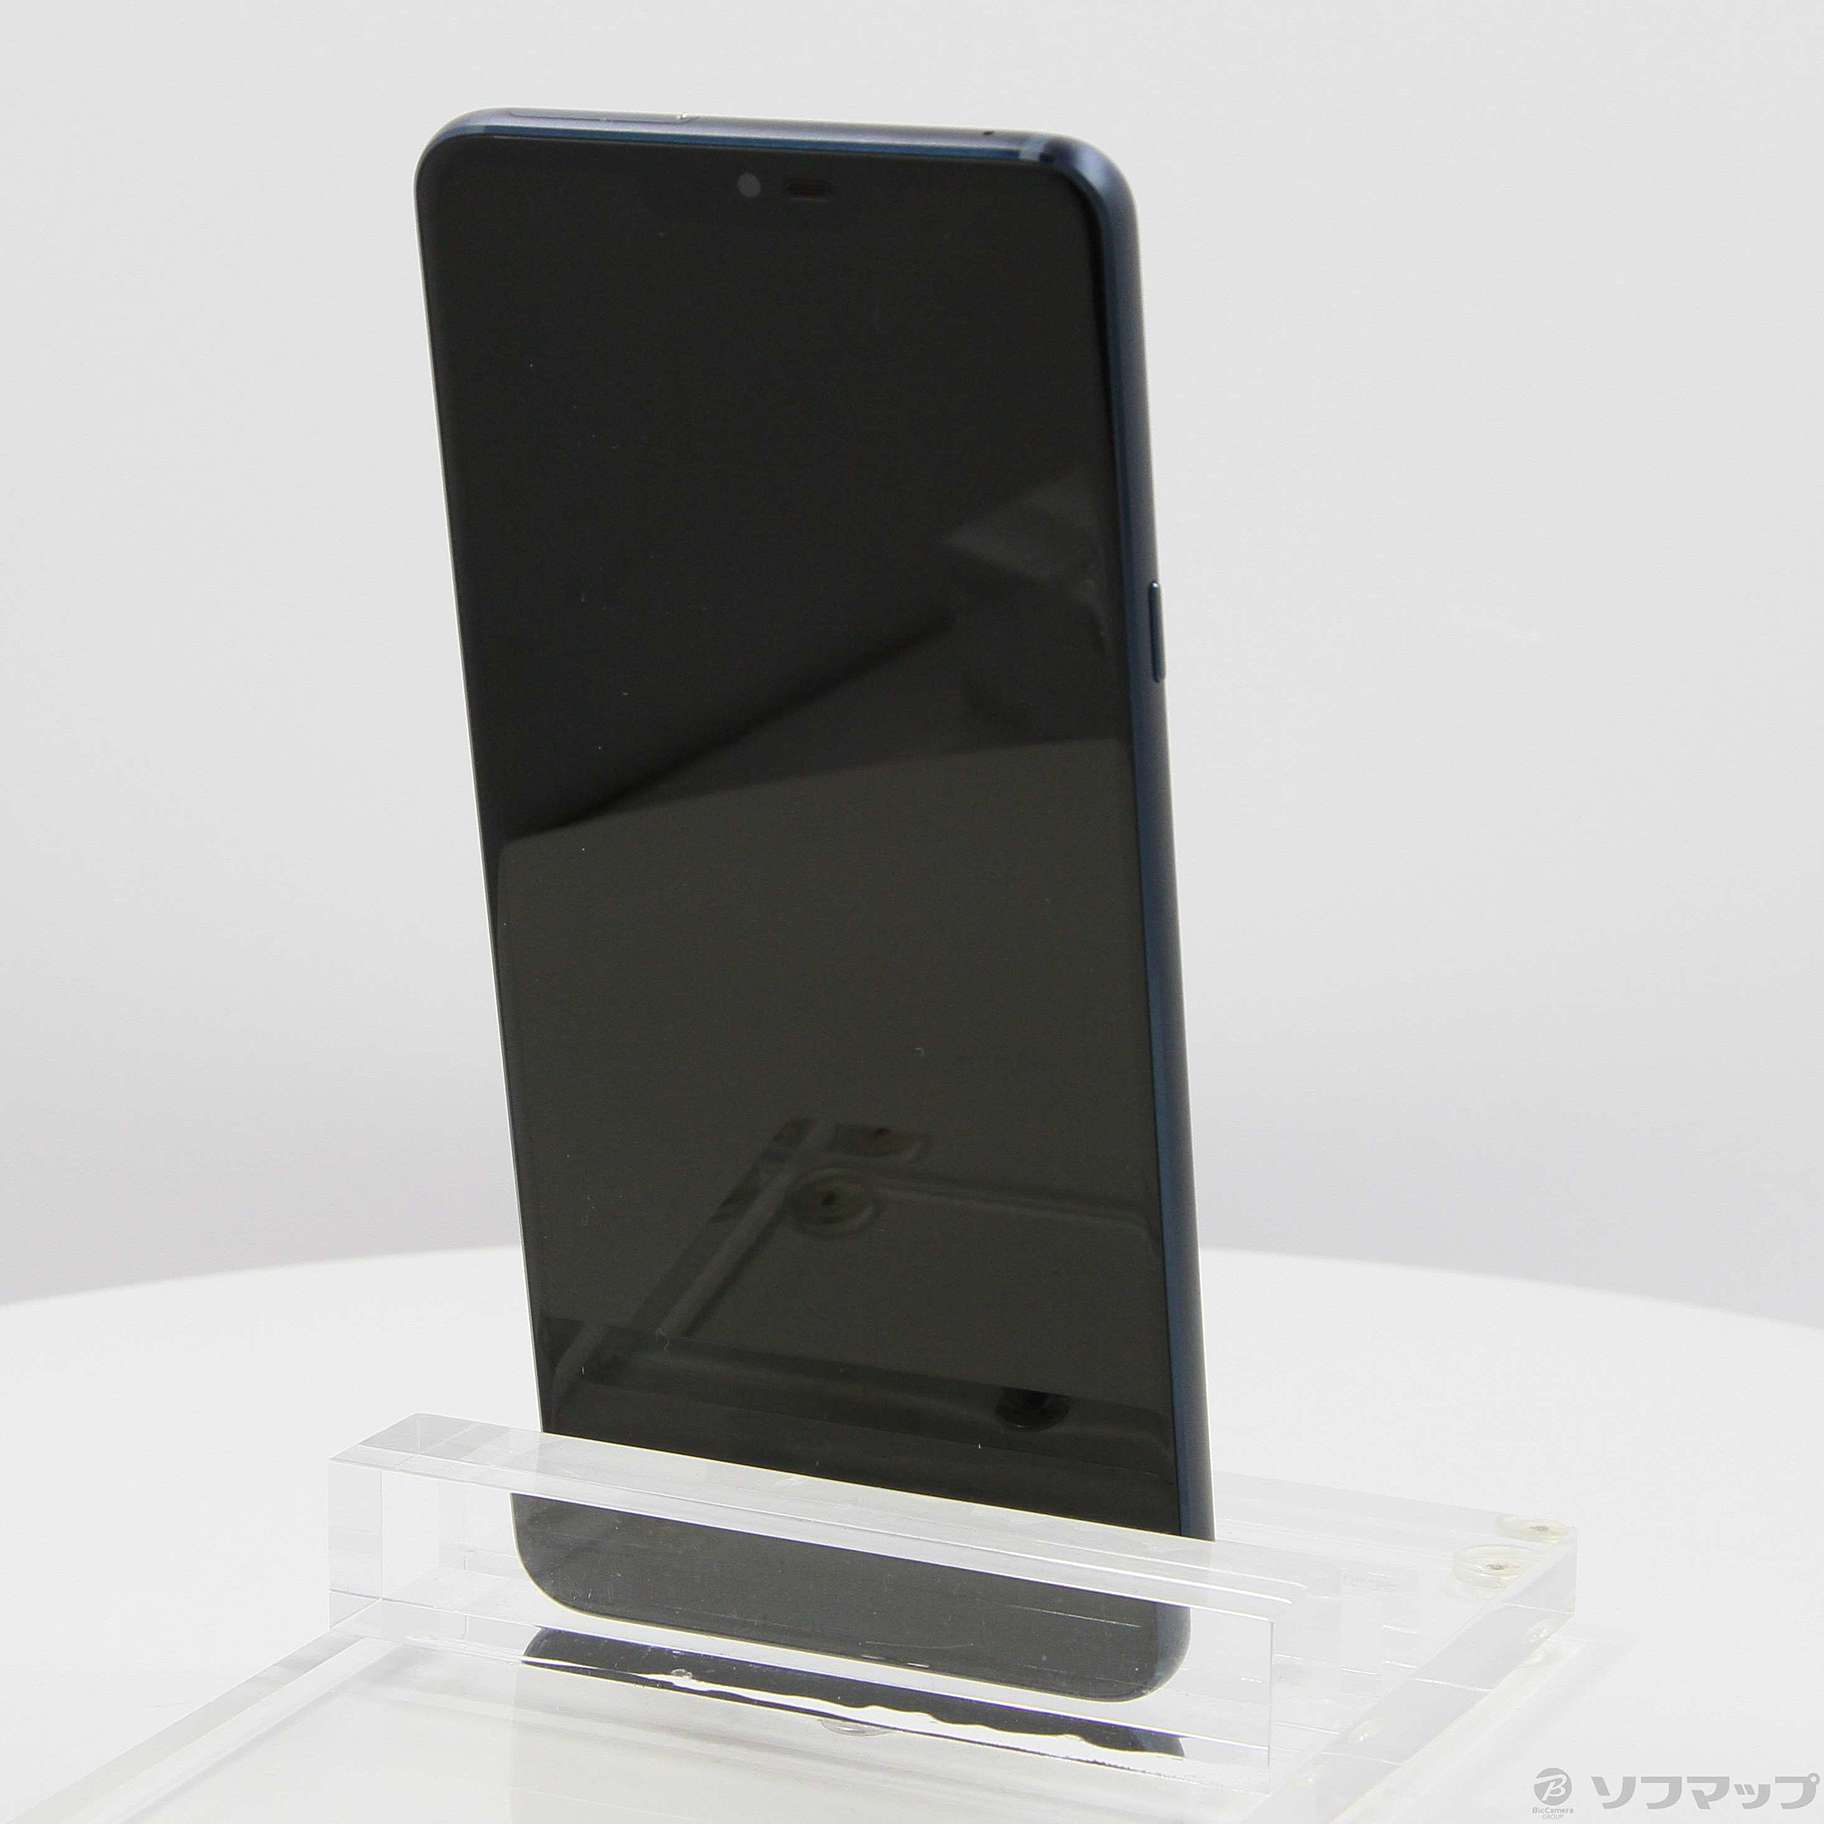 【新品SIMフリー】LG エルジー Android One X5 32GB